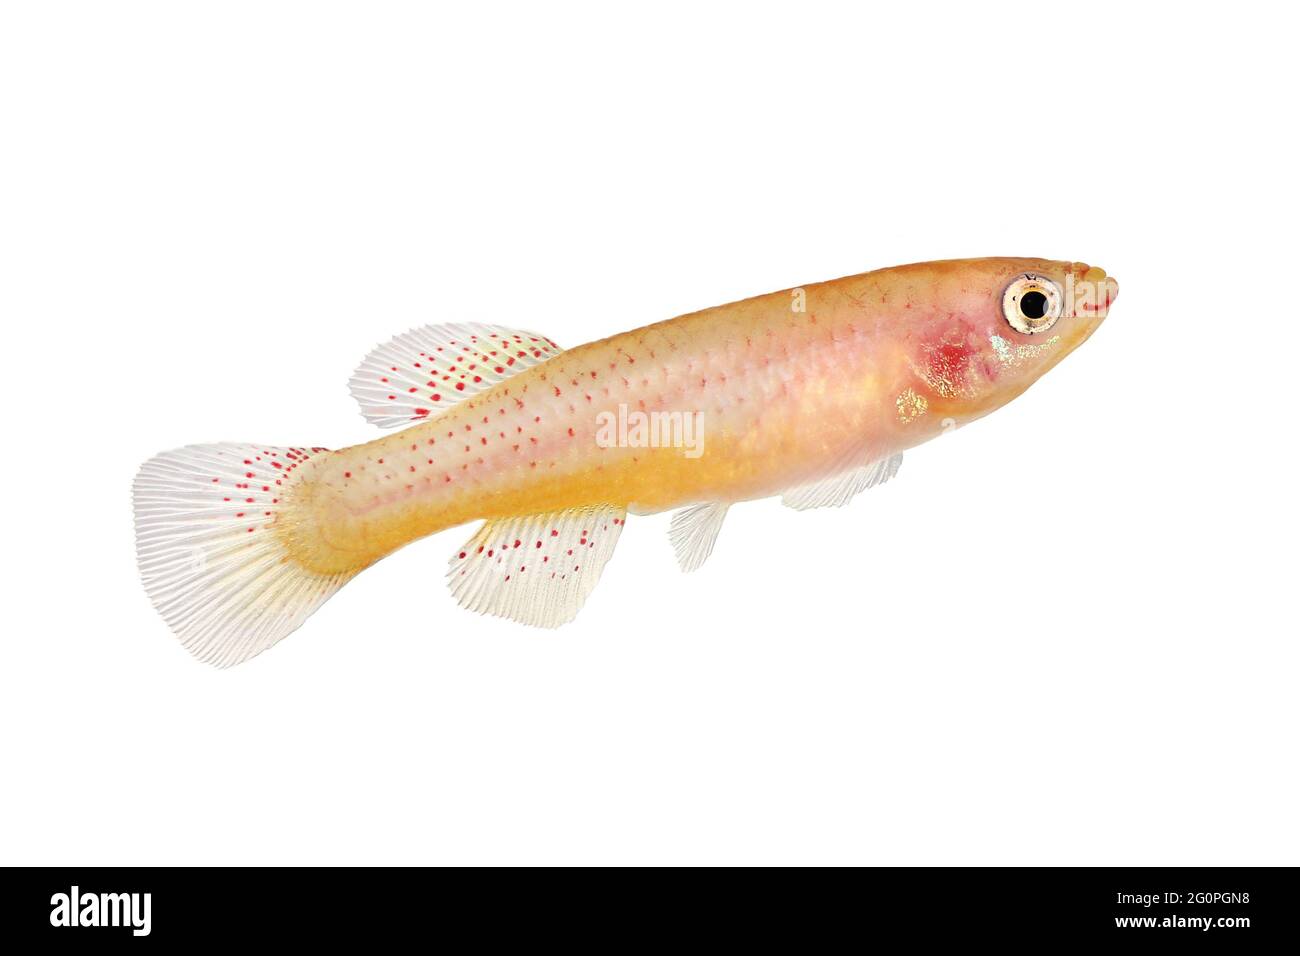 Female Killi Aphyosemion austral Hjersseni gold Aquarium fish isolated on White Stock Photo